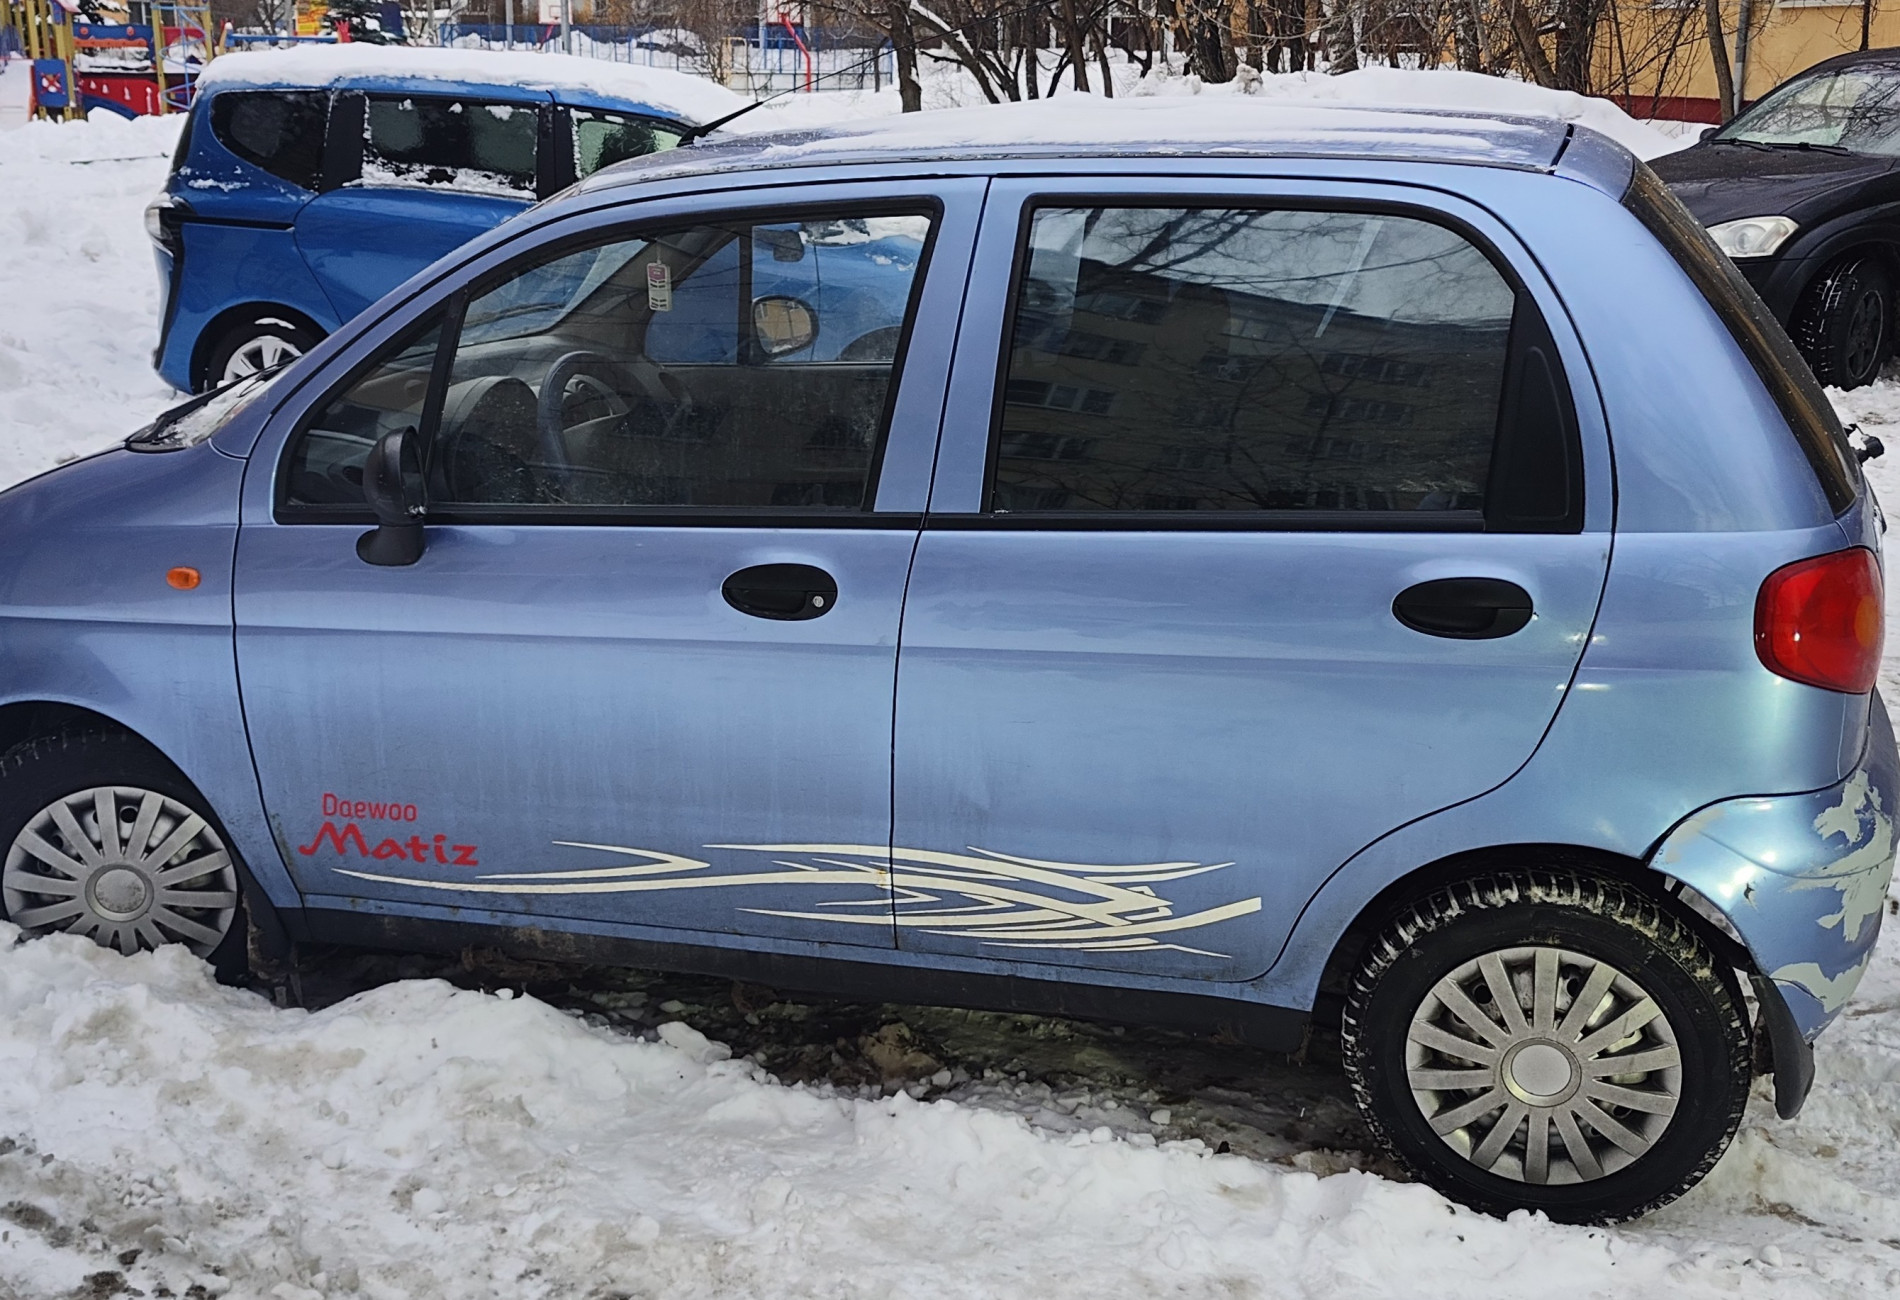 Аренда daewoo matiz эконом класса 2007 года в городе Москва от 1000 руб./сутки, передний привод, двигатель: бензин, объем 0.8 литров, ОСАГО (Впишу в полис), без водителя, недорого, вид 2 - RentRide